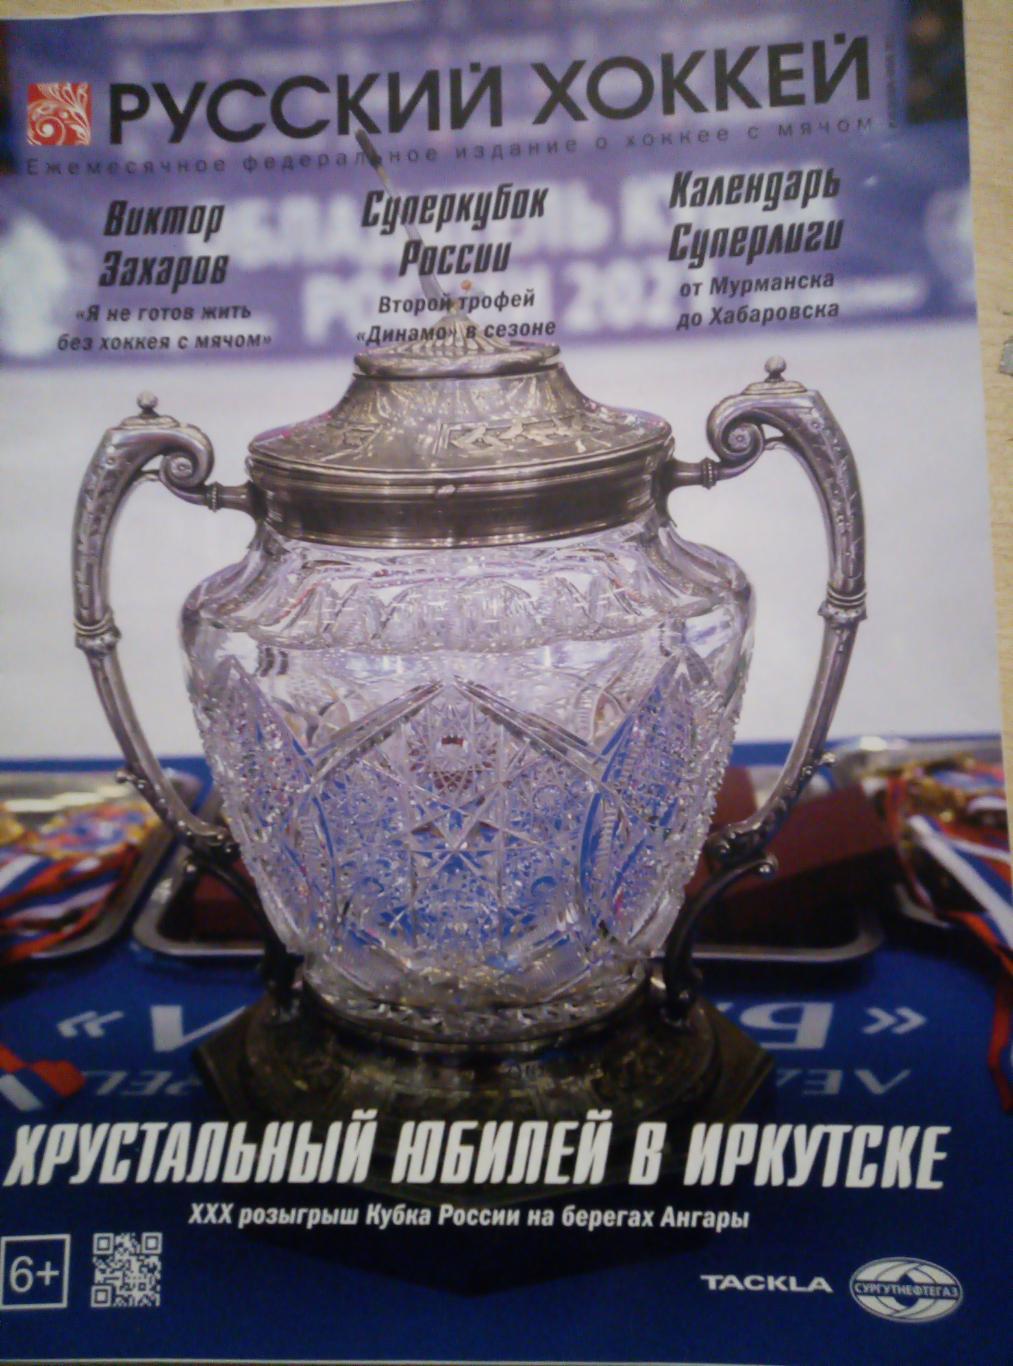 Журнал Русский хоккей - октябрь-ноябрь 2021